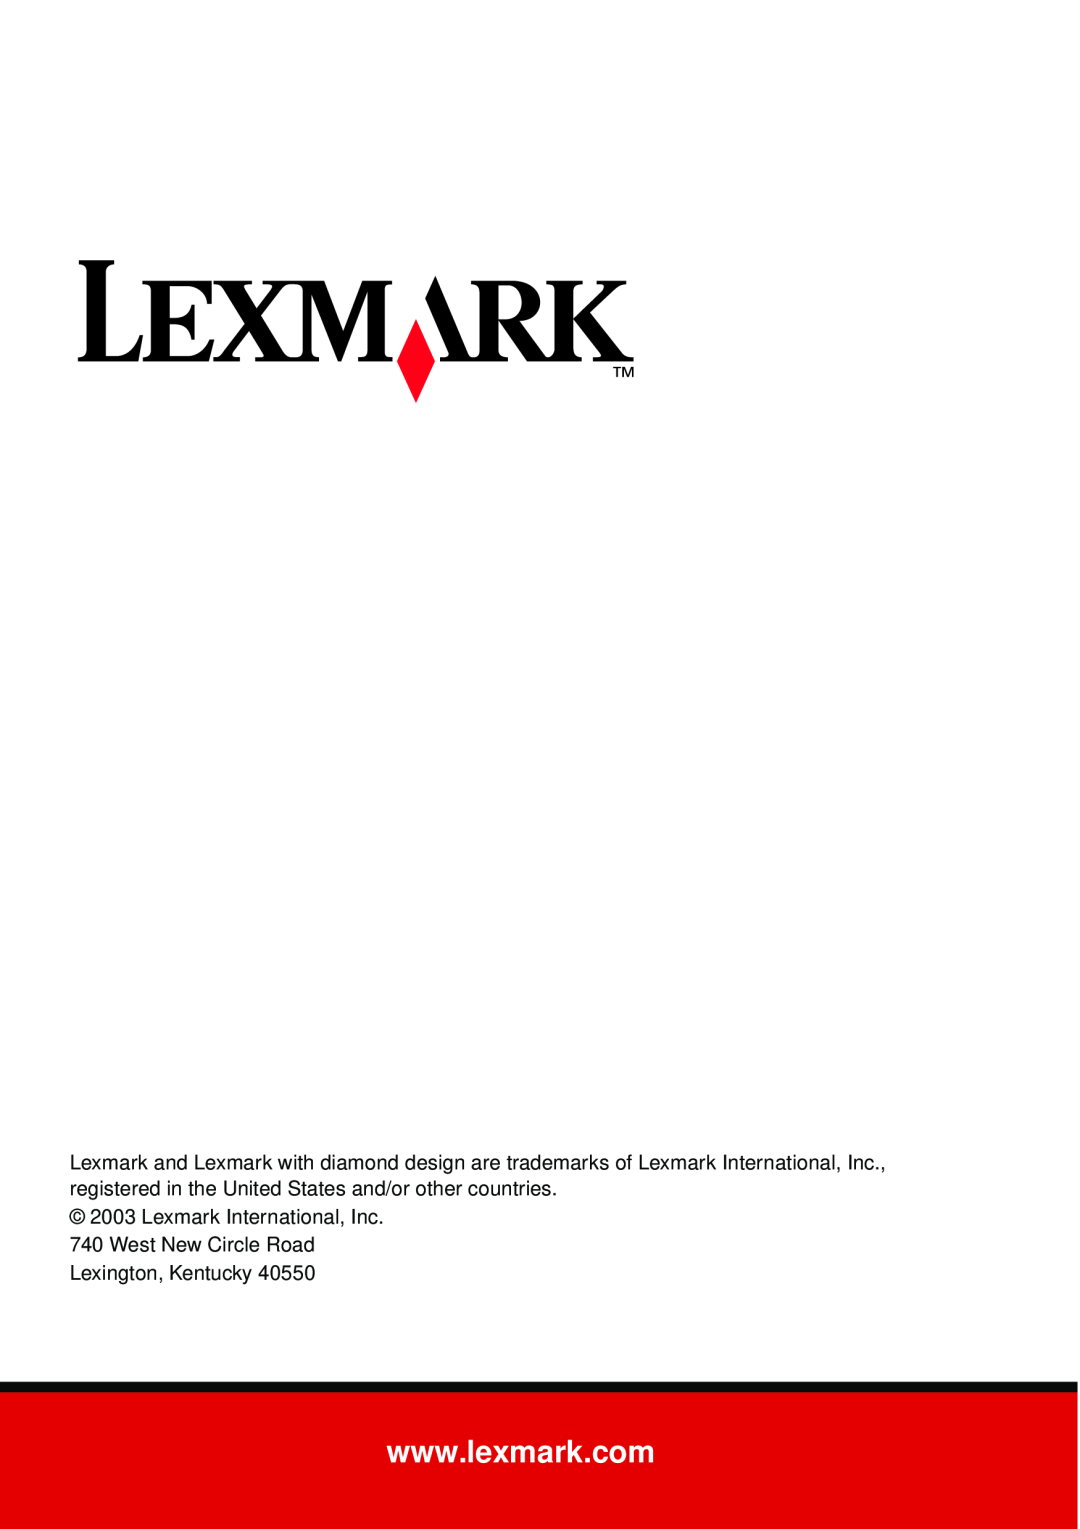 Lexmark X6100 manual Lexmark International, Inc, West New Circle Road Lexington, Kentucky 